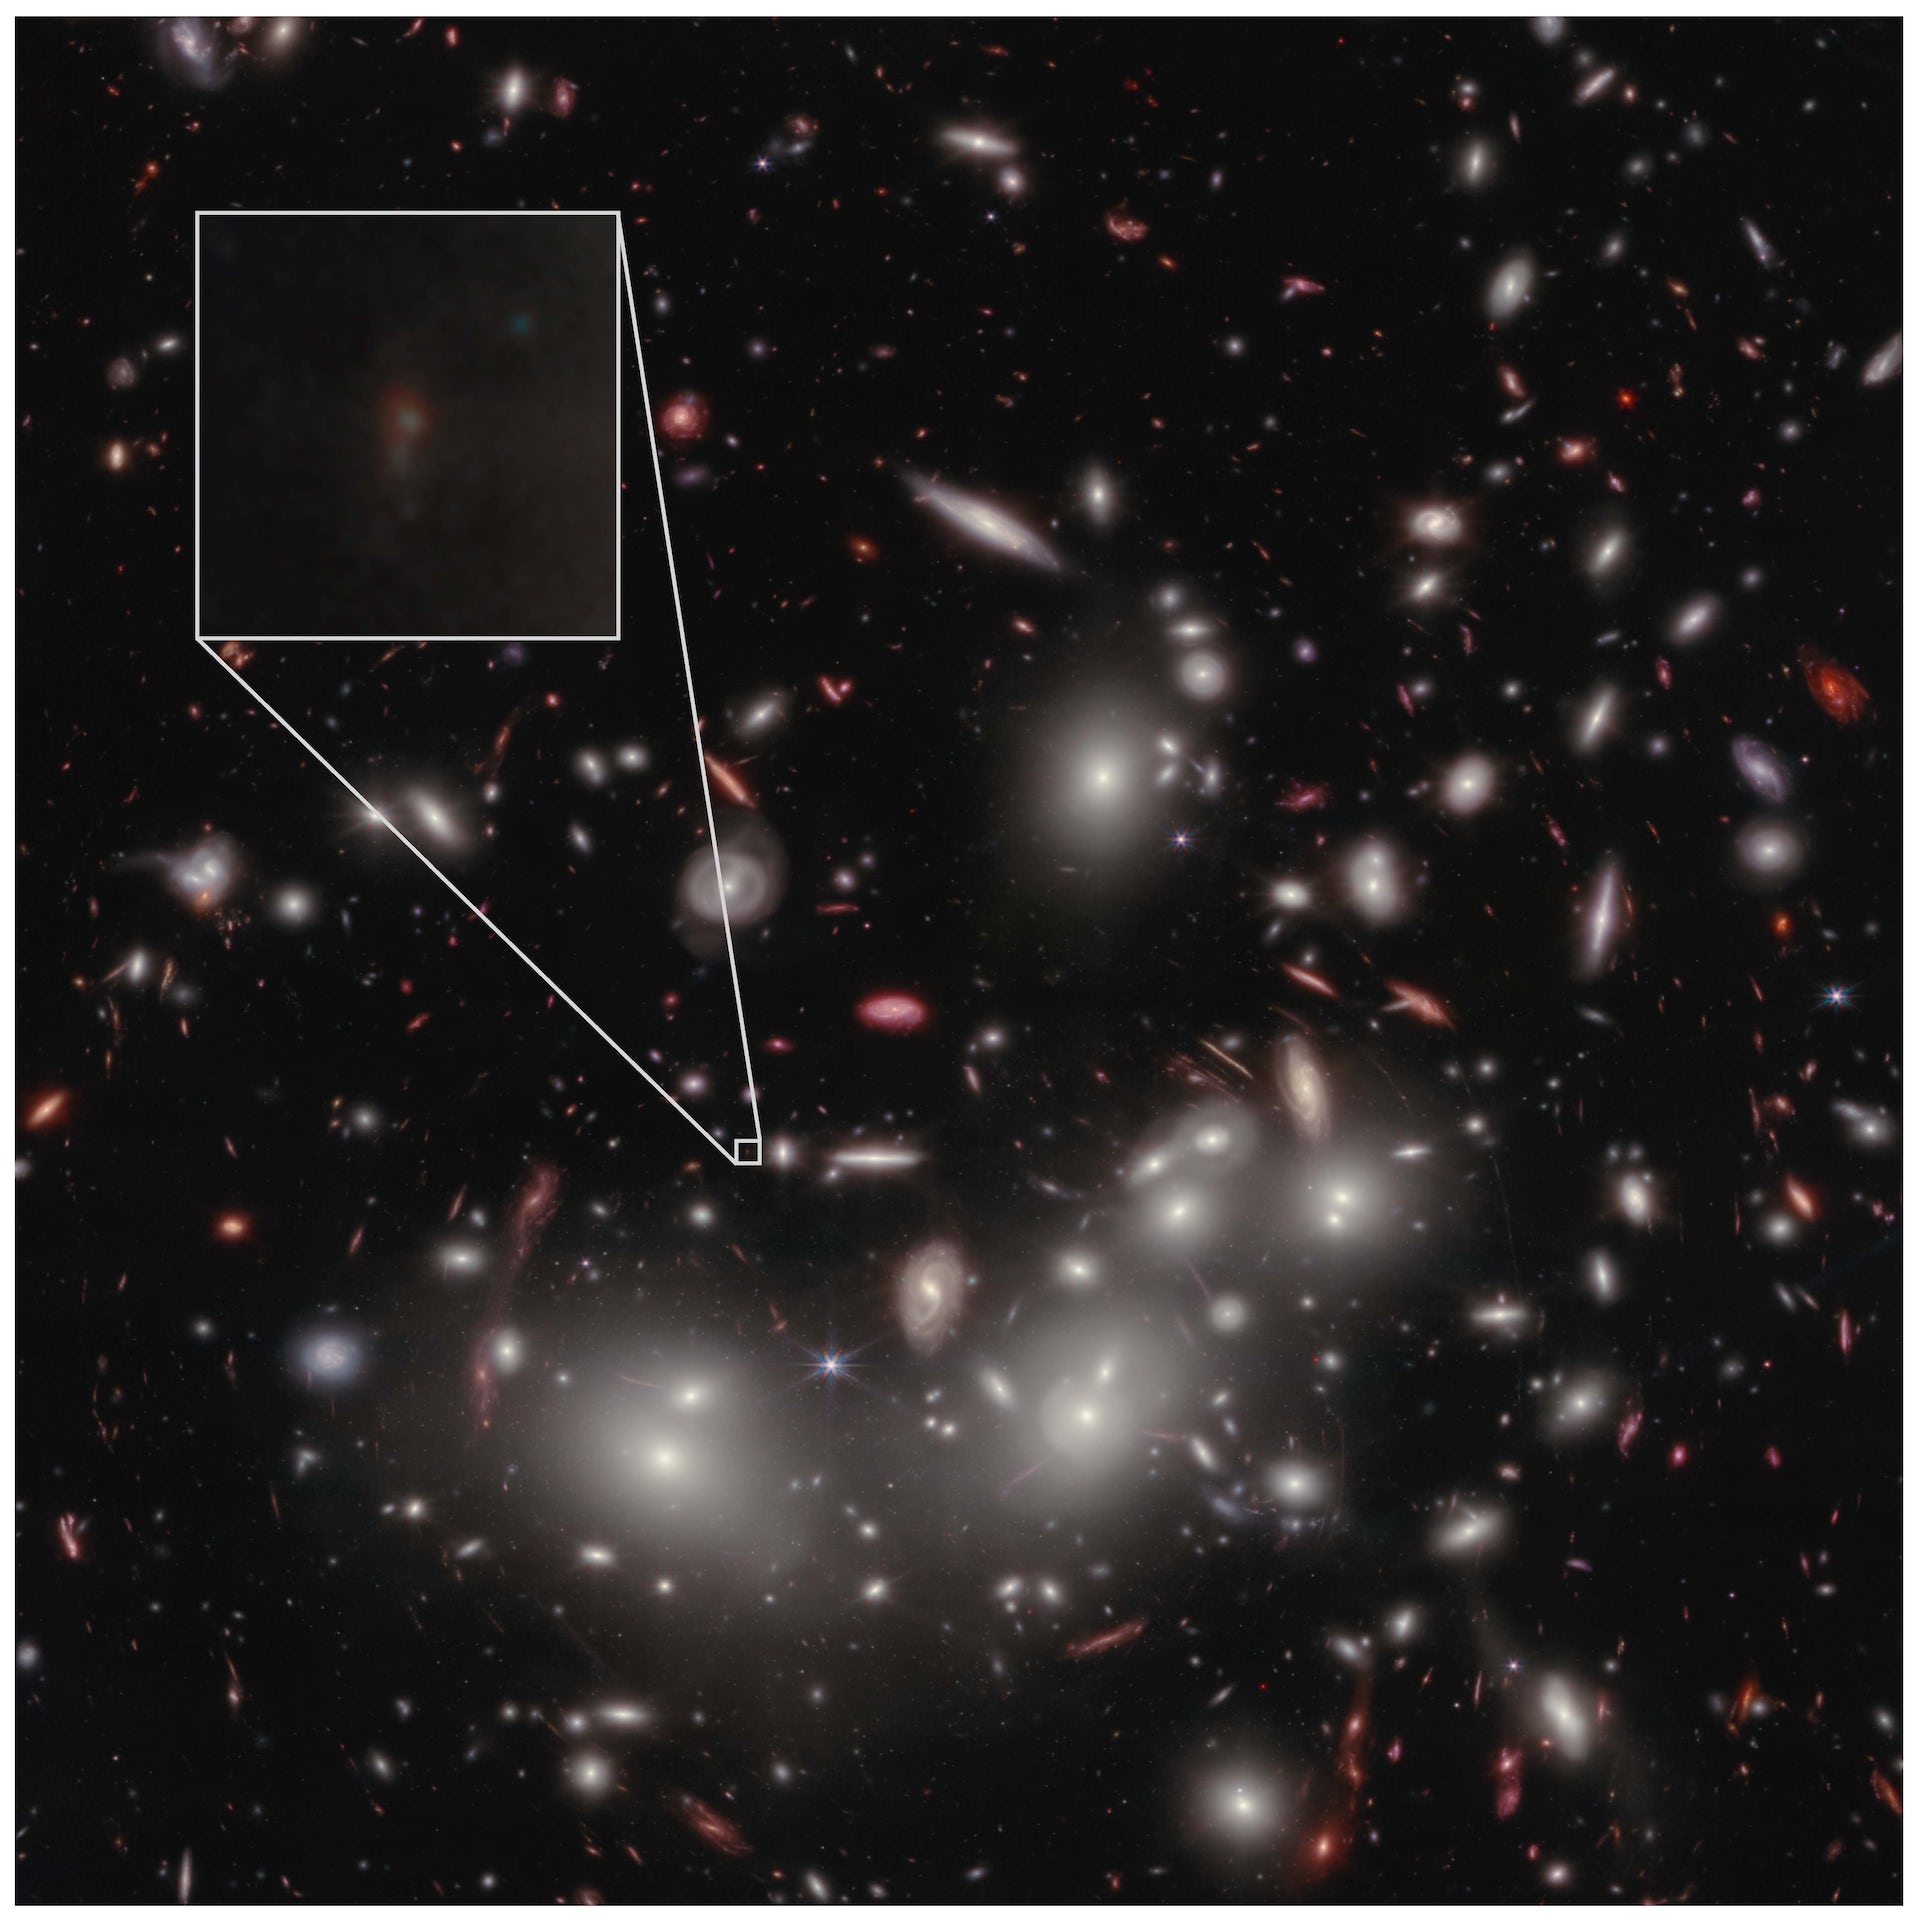 Sterke lys (galakser og noen få stjerner) mot et mørkt bakteppe av himmelen. En svak galakse vises i en forstørret boks som en svak flekk.